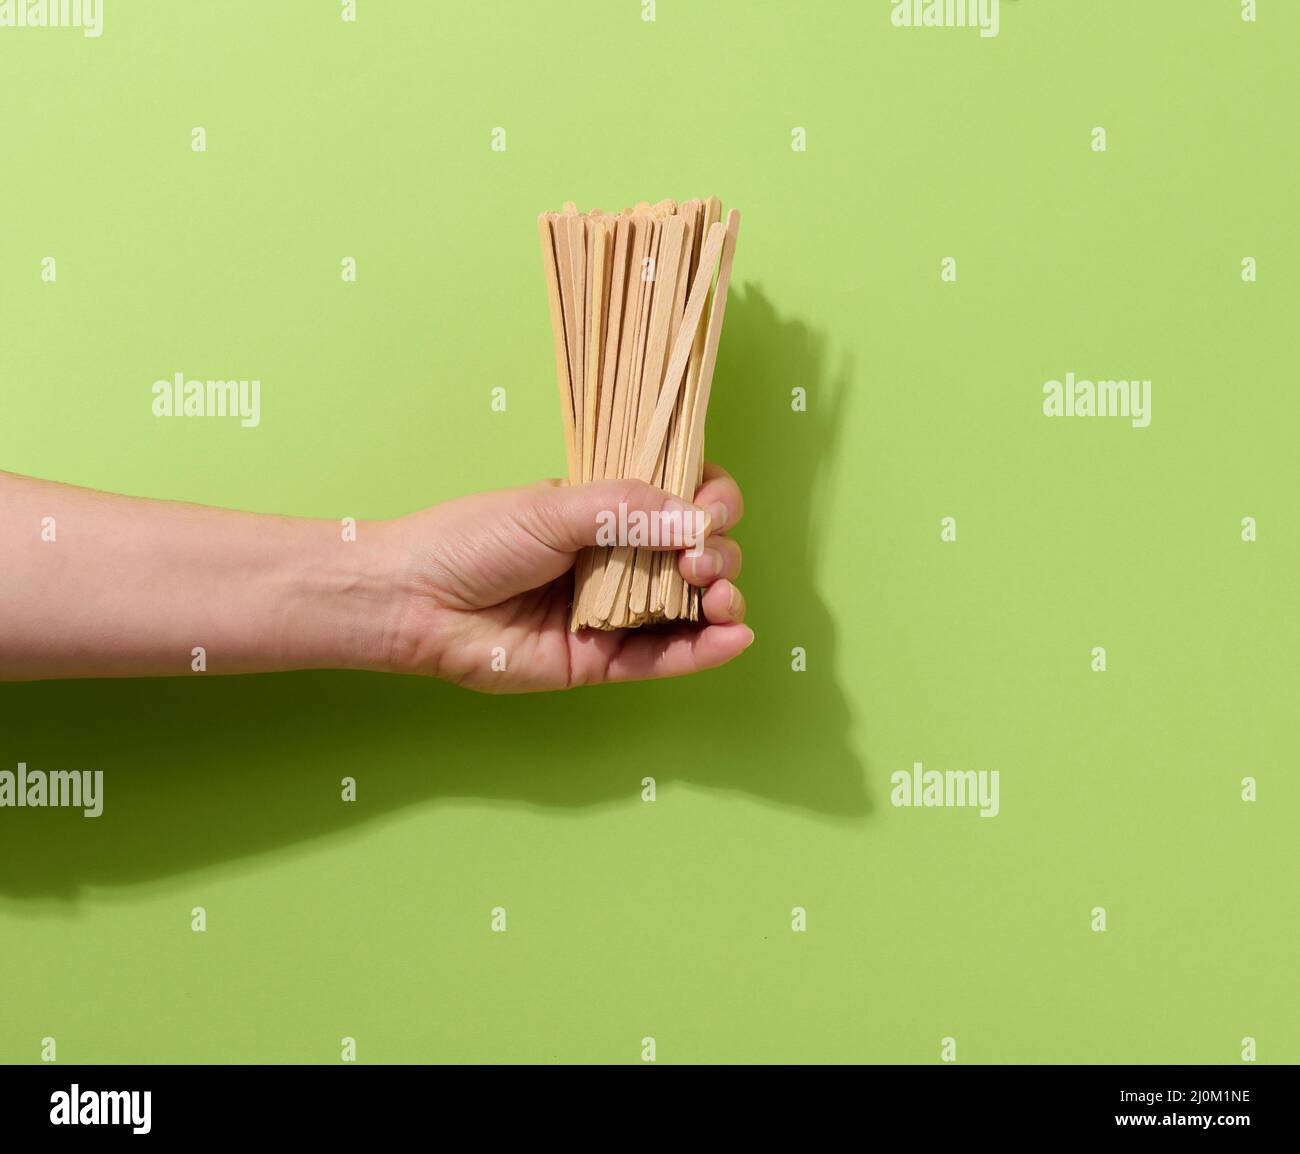 Weibliche Hand hält Einweg-Holzstäbchen zum Rühren von heißen Getränken auf grünem Hintergrund. Kaffee- und Teelöffel Stockfoto